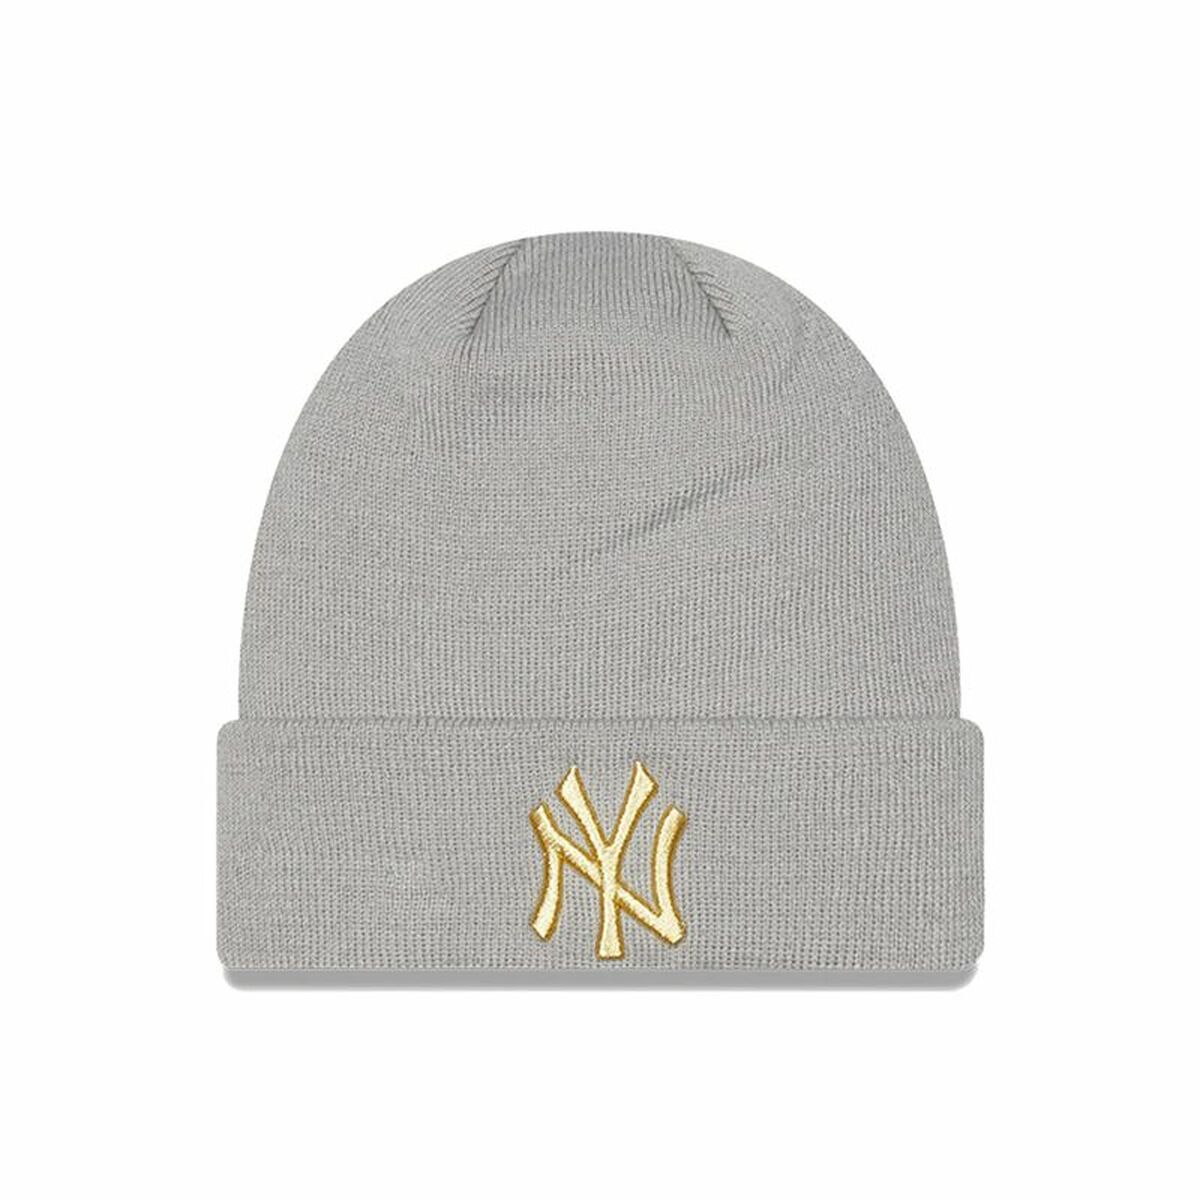 Pălărie New Era New York Yankees Gri Auriu* Mărime unică